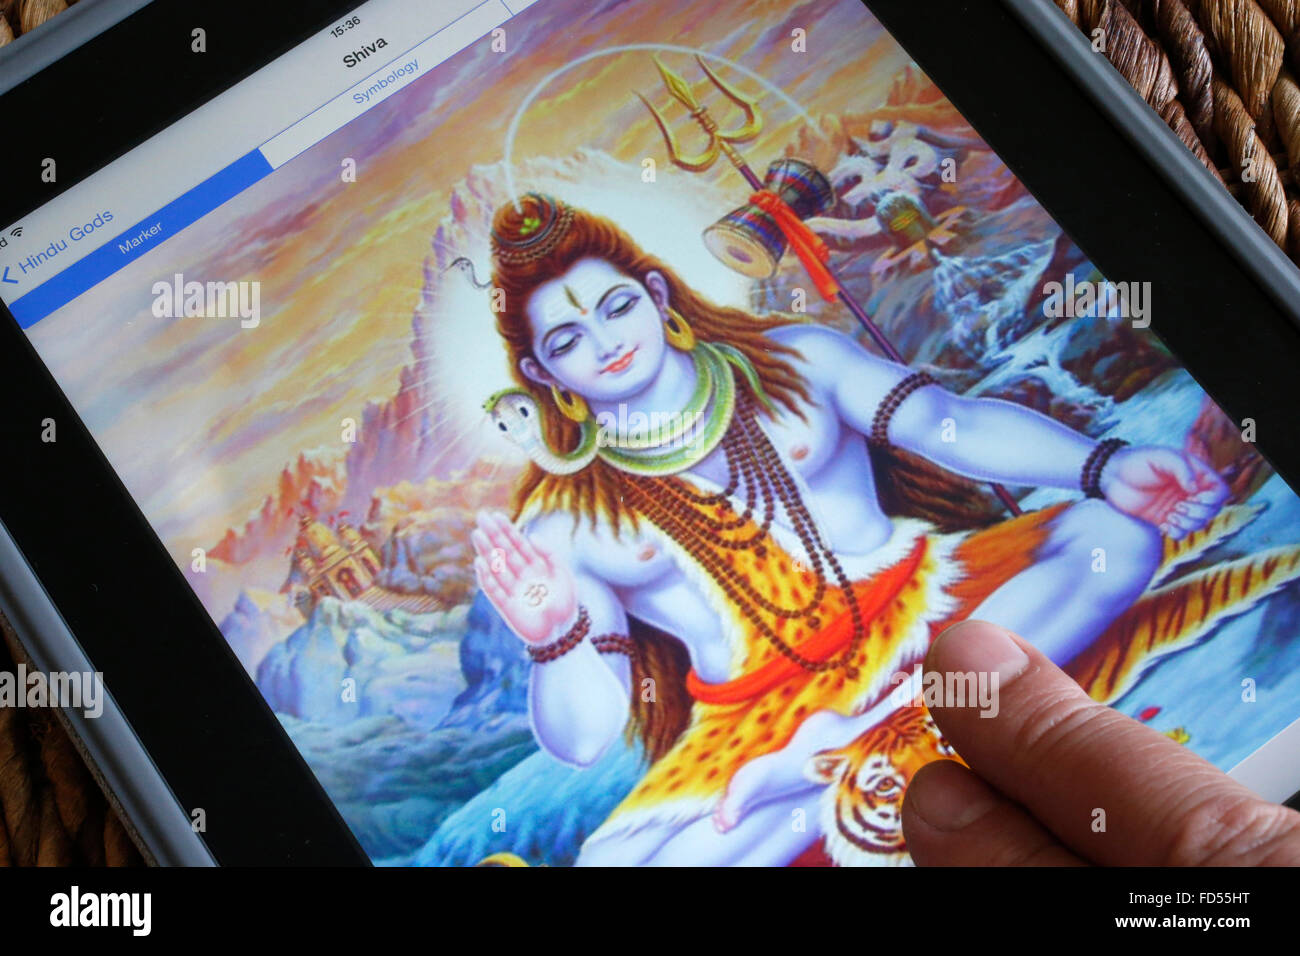 Hindu deity on an Ipad. Shiva. Stock Photo